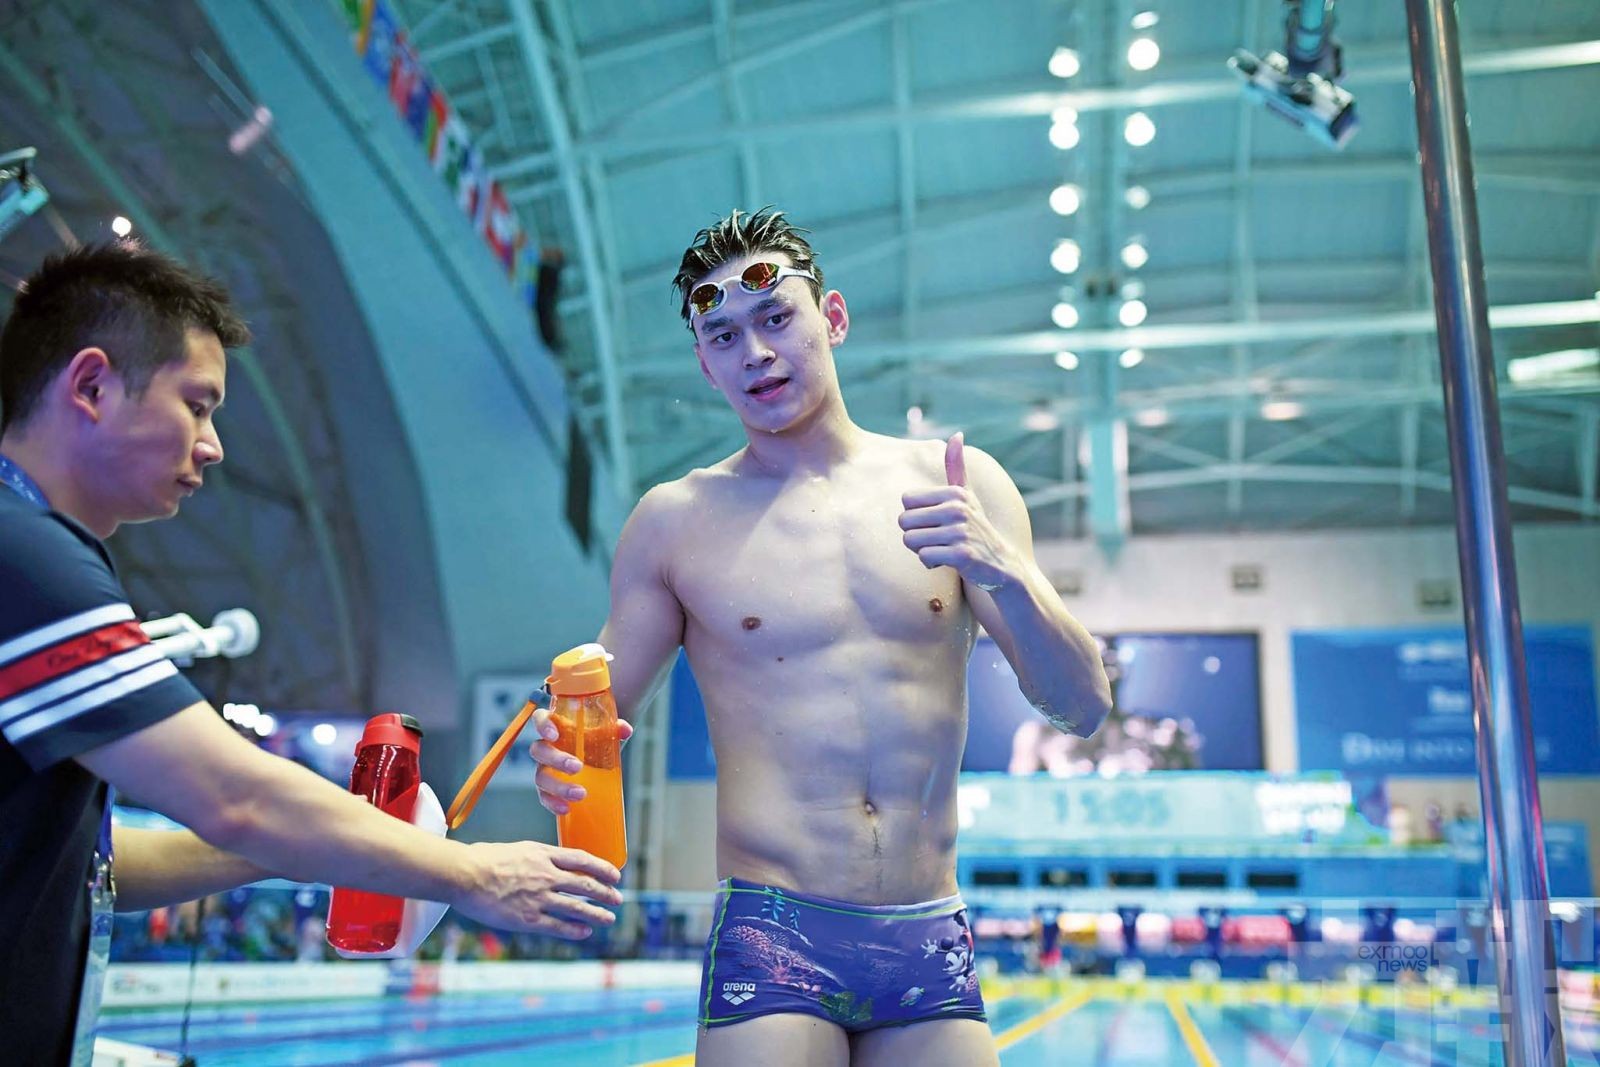 國際泳聯擬褫奪孫楊世界冠軍頭銜